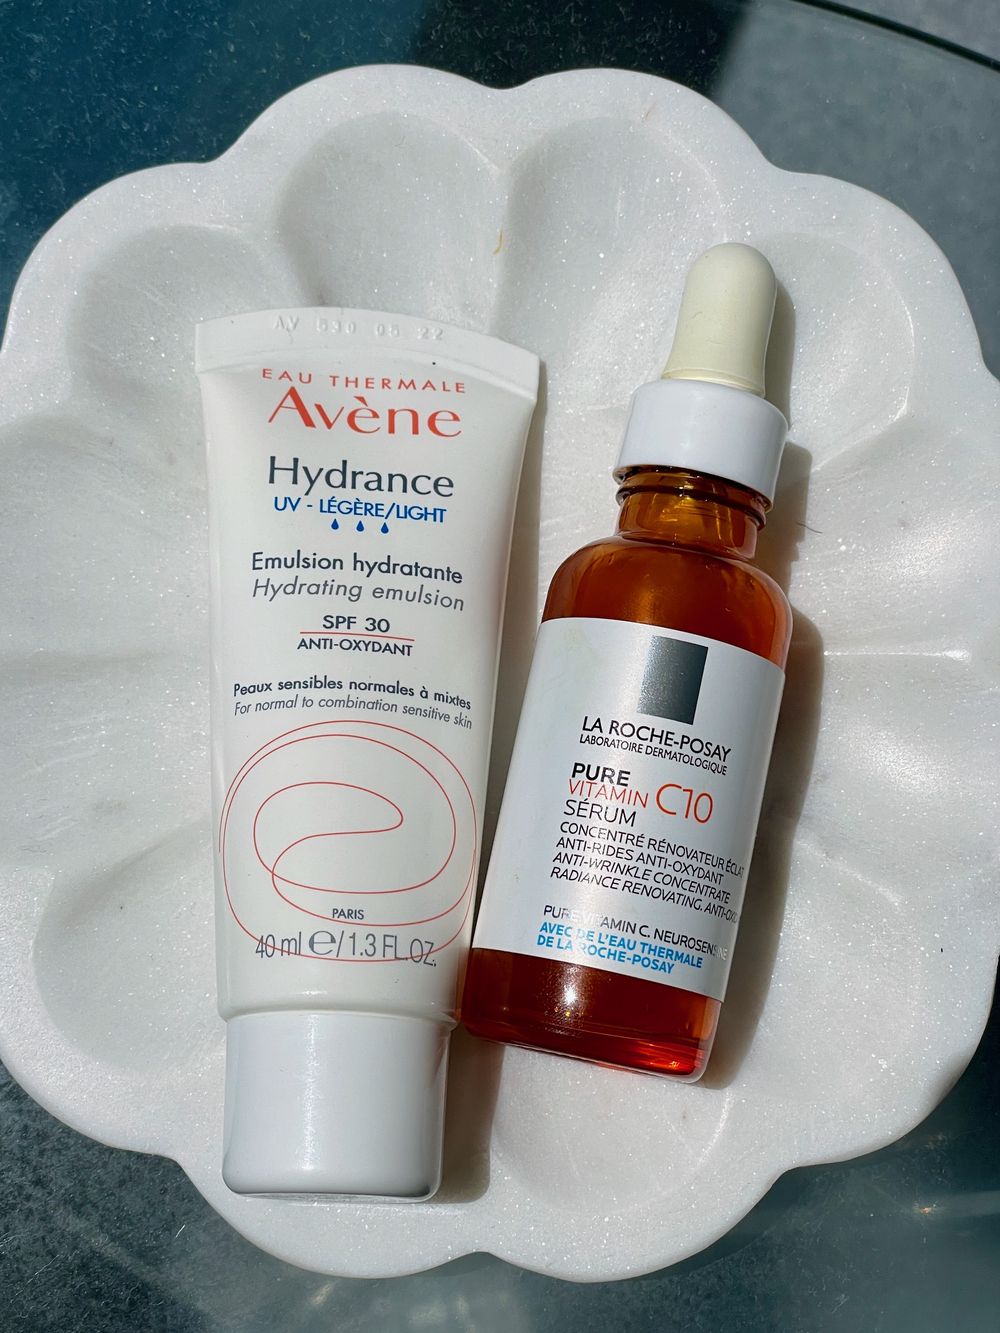 Avène vs. La Roche-Posay: Which Skincare Brand is Better?